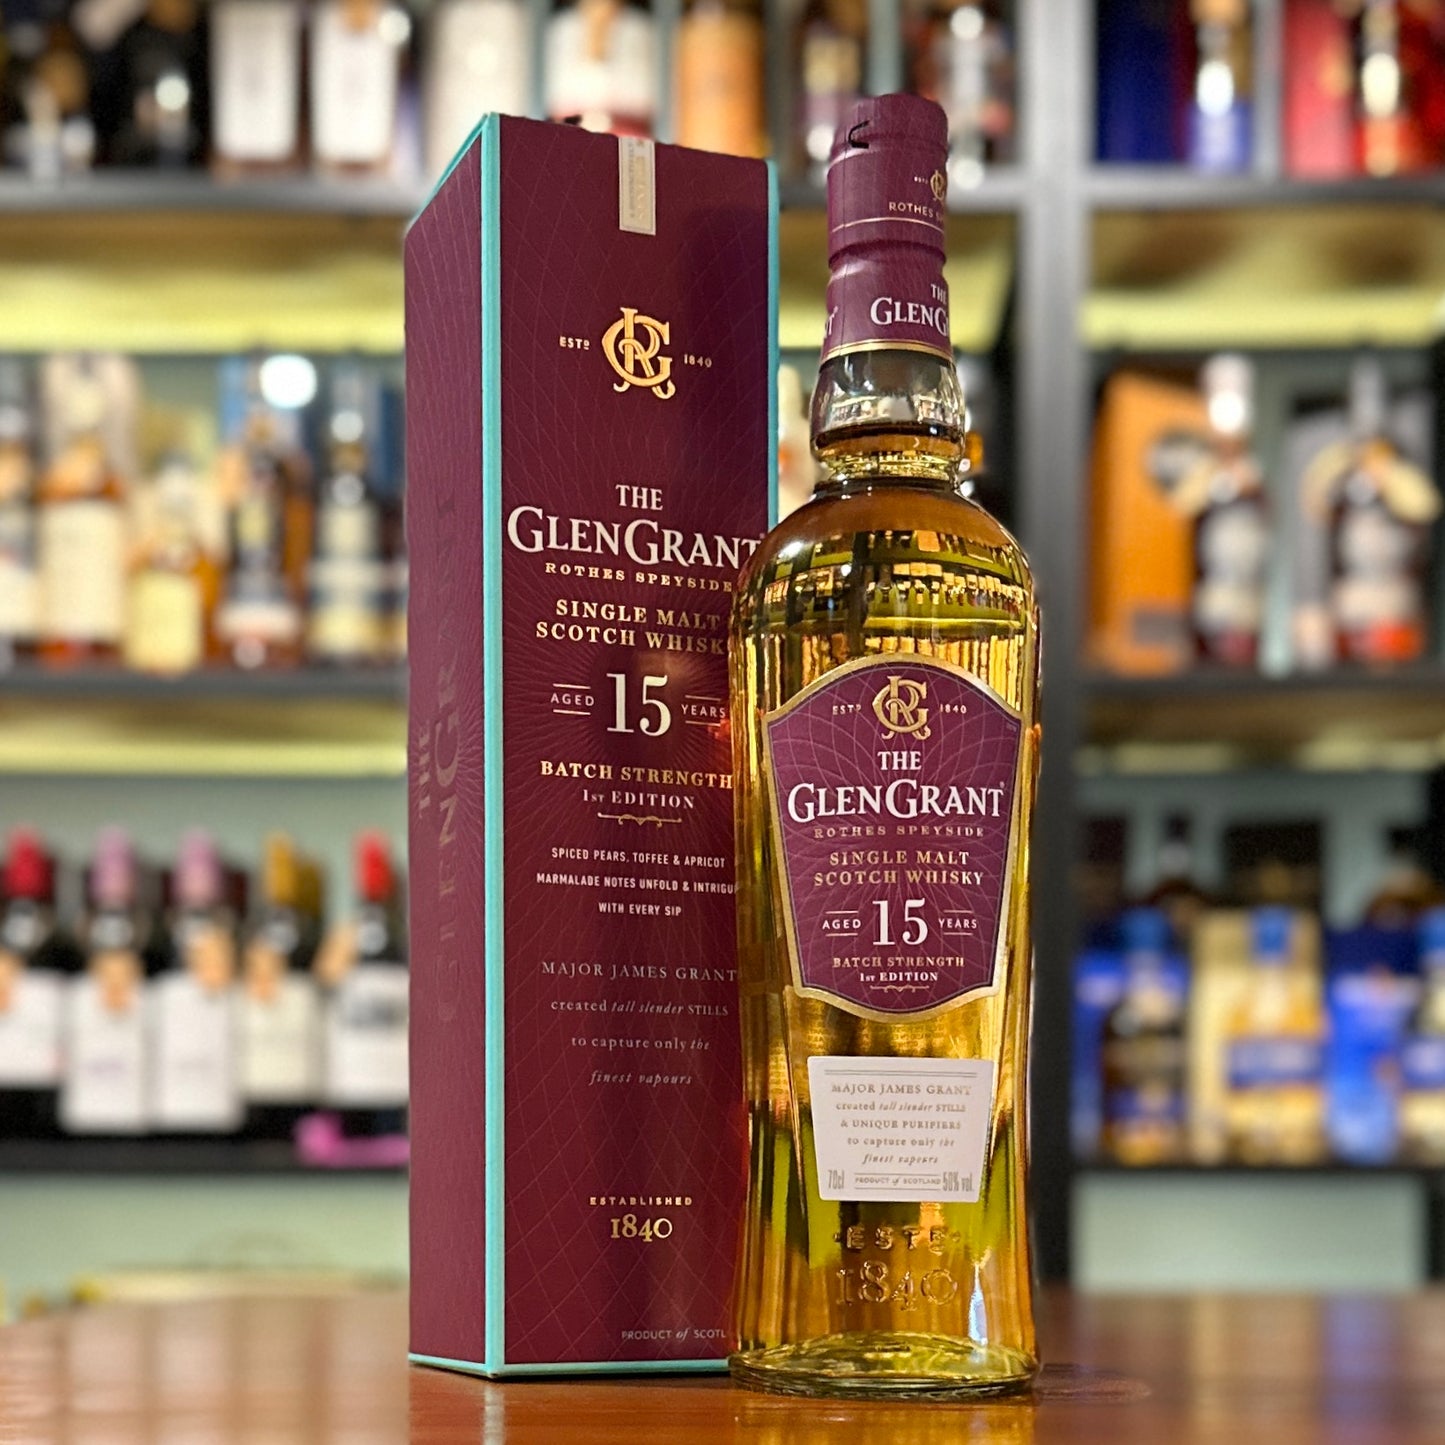 Glen Grant 15 Year Old Batch Strength Single Malt Scotch Whisky